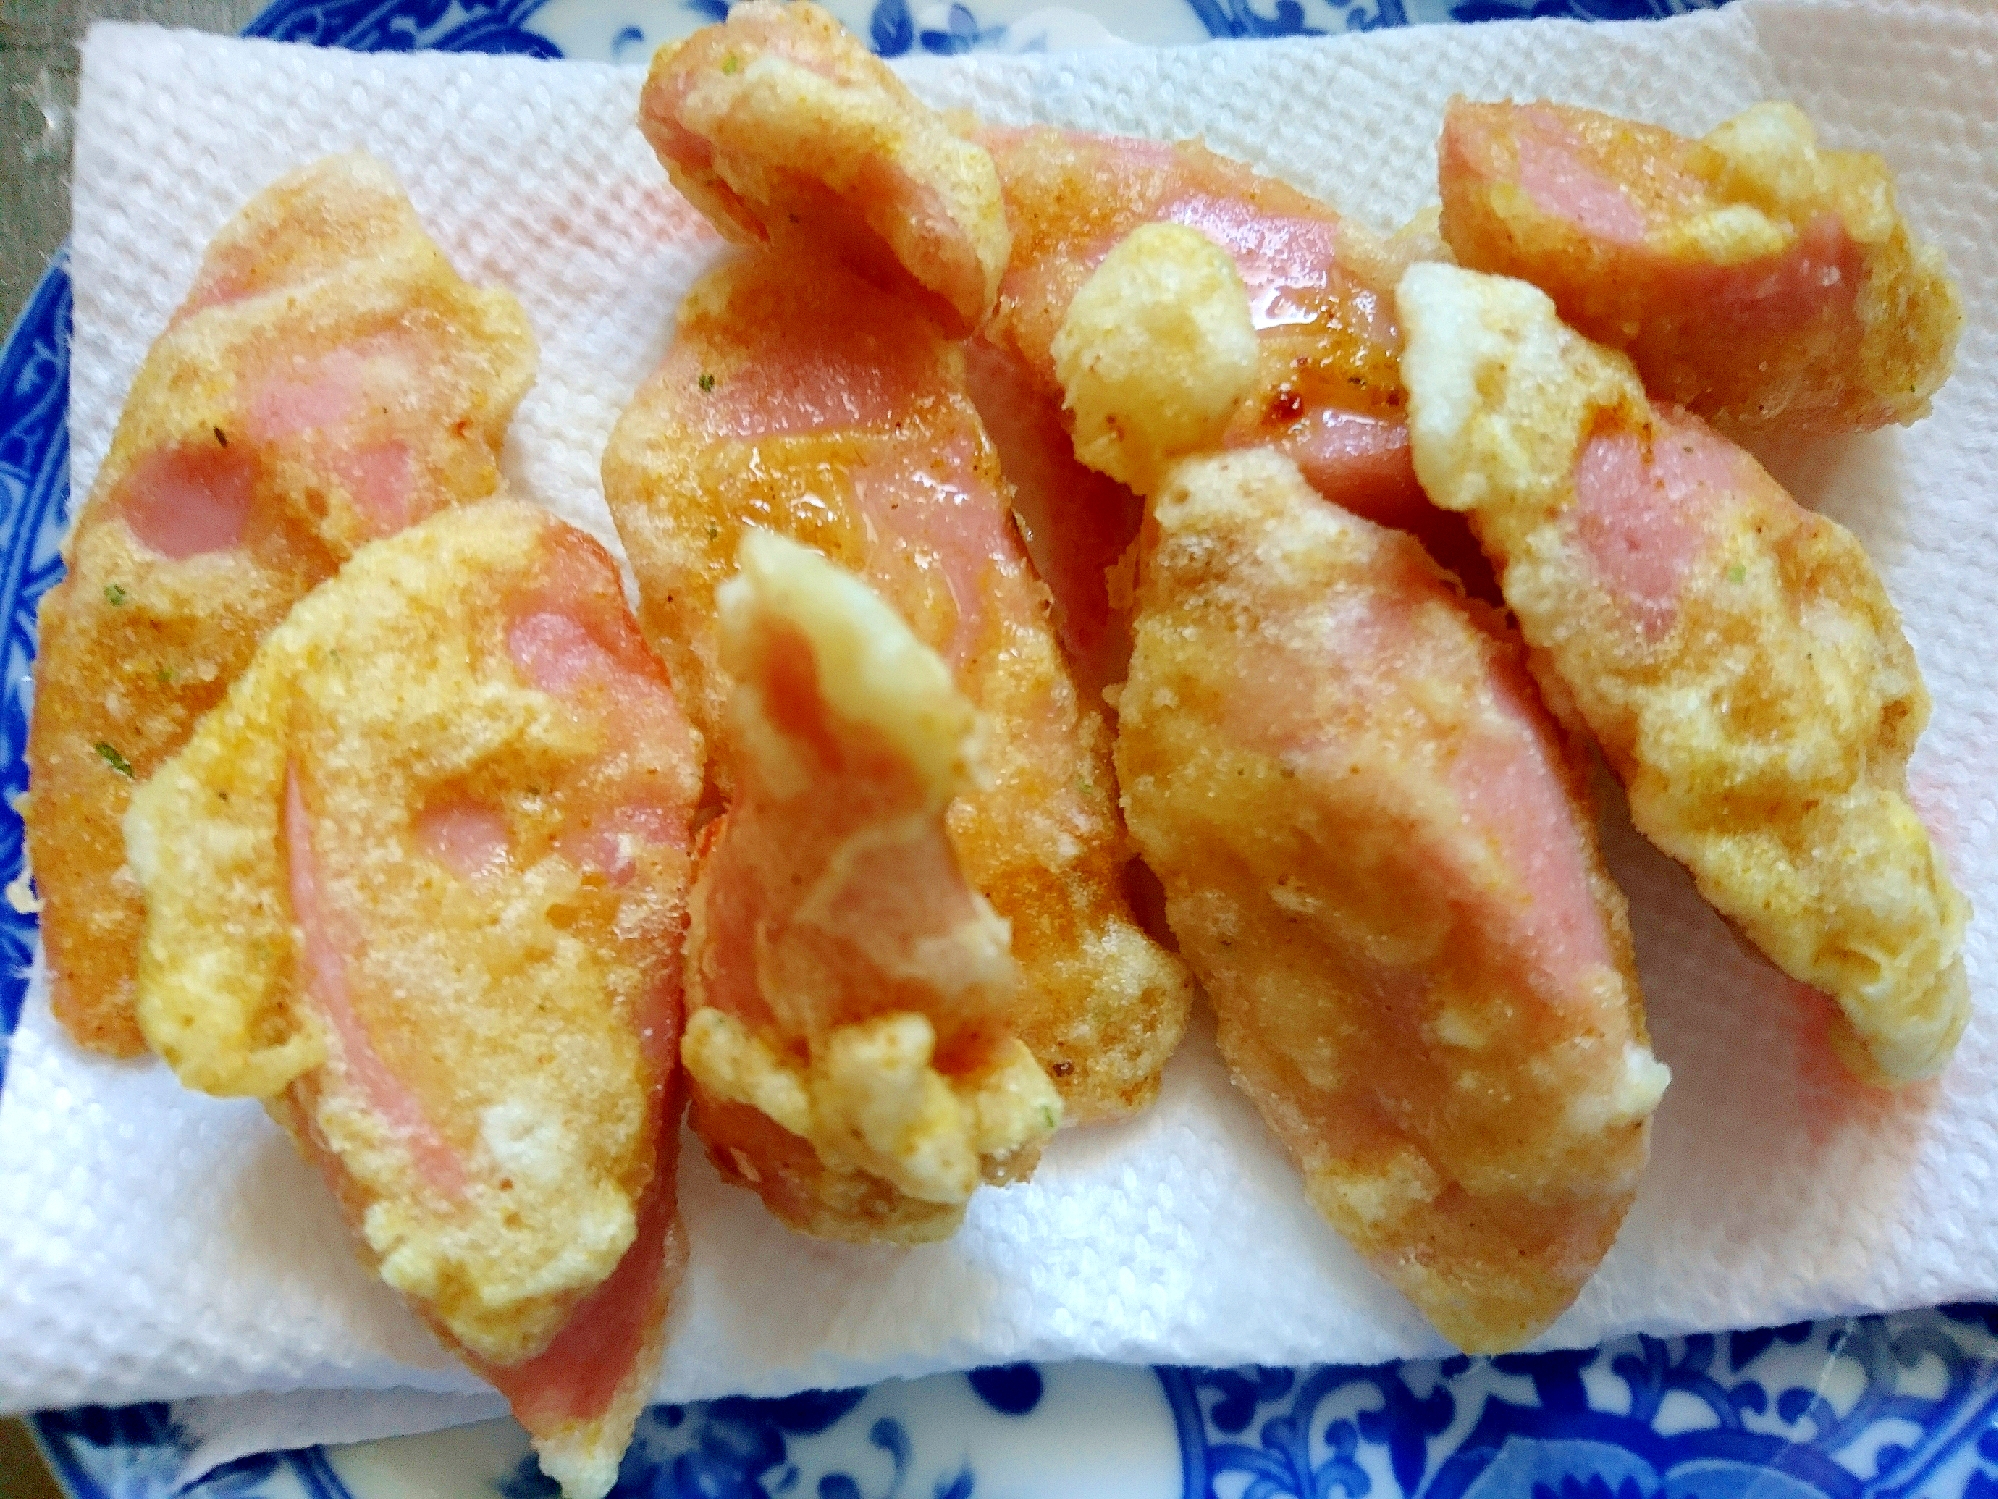 魚肉ソーセージの天ぷら(カレー味)